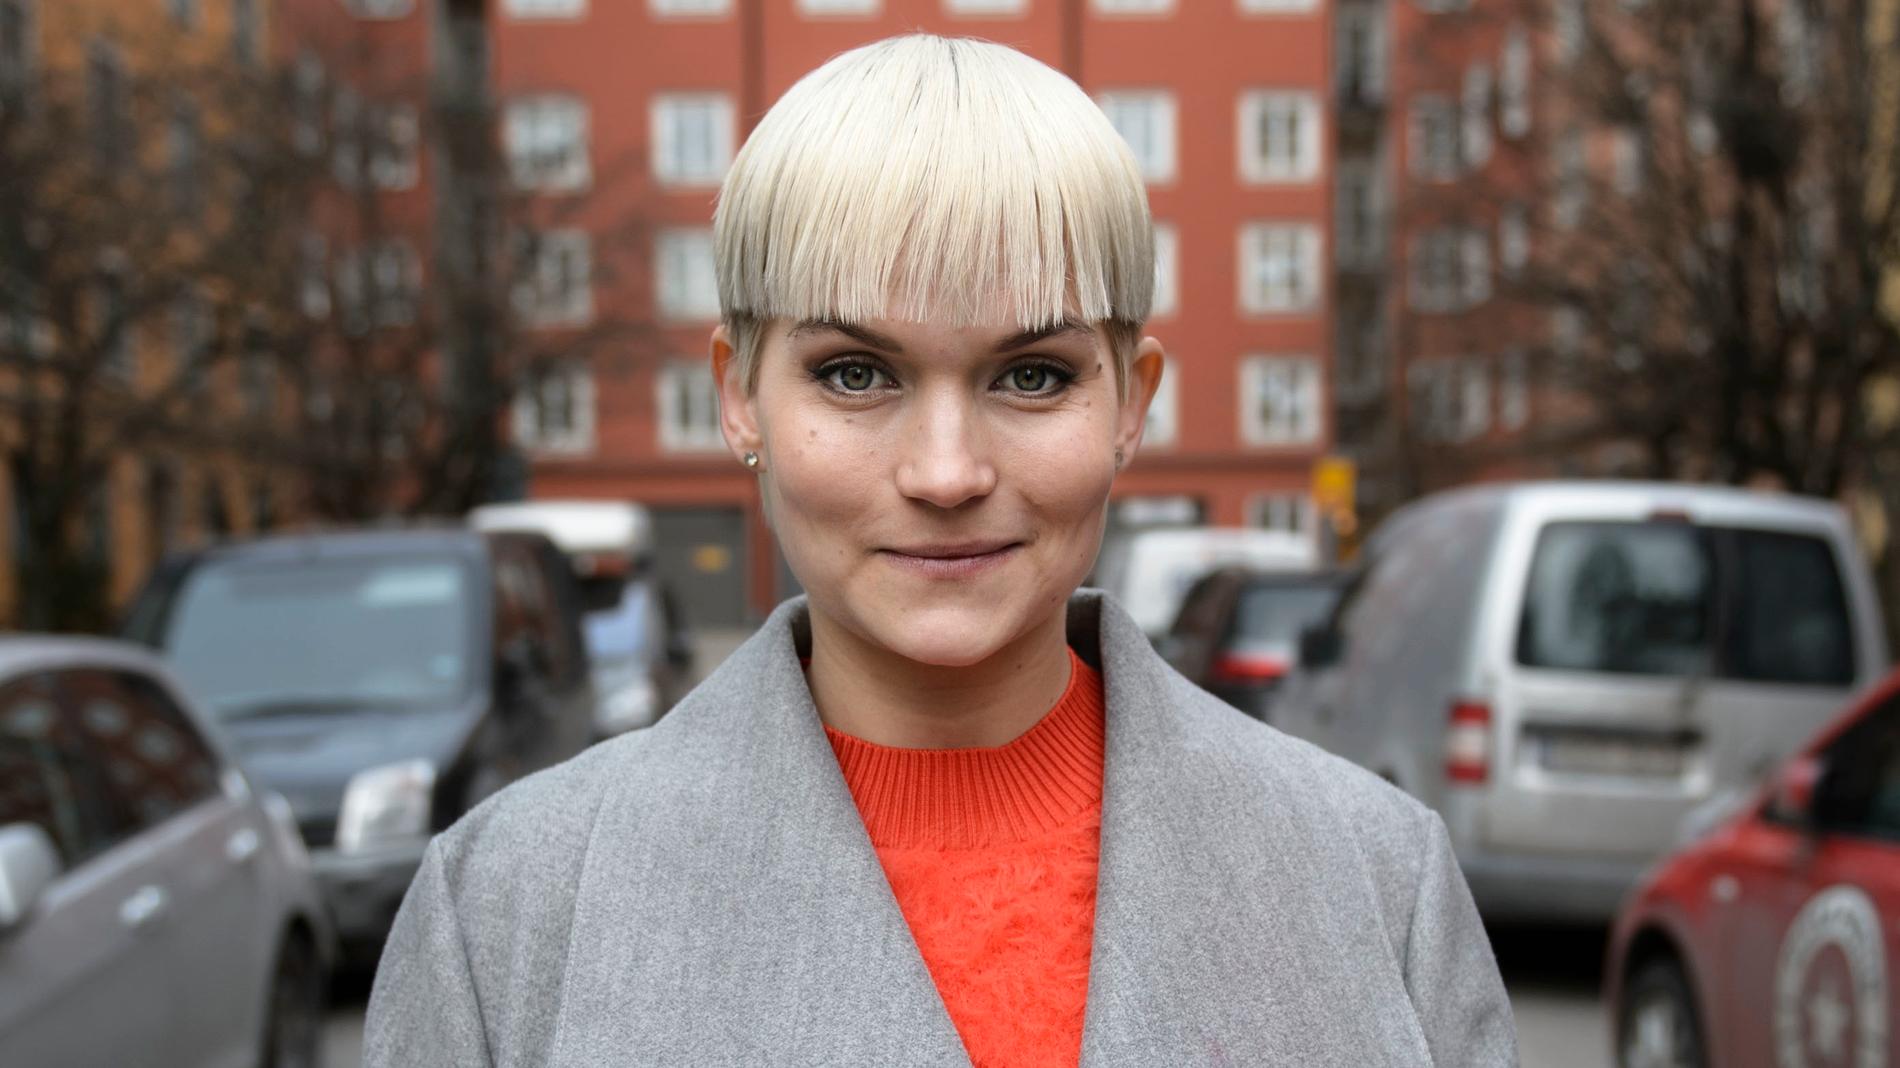 Tiffany Kronlöf är i höst aktuell med tv-programmet "Finska rycket med Tiffany". Arkivbild.